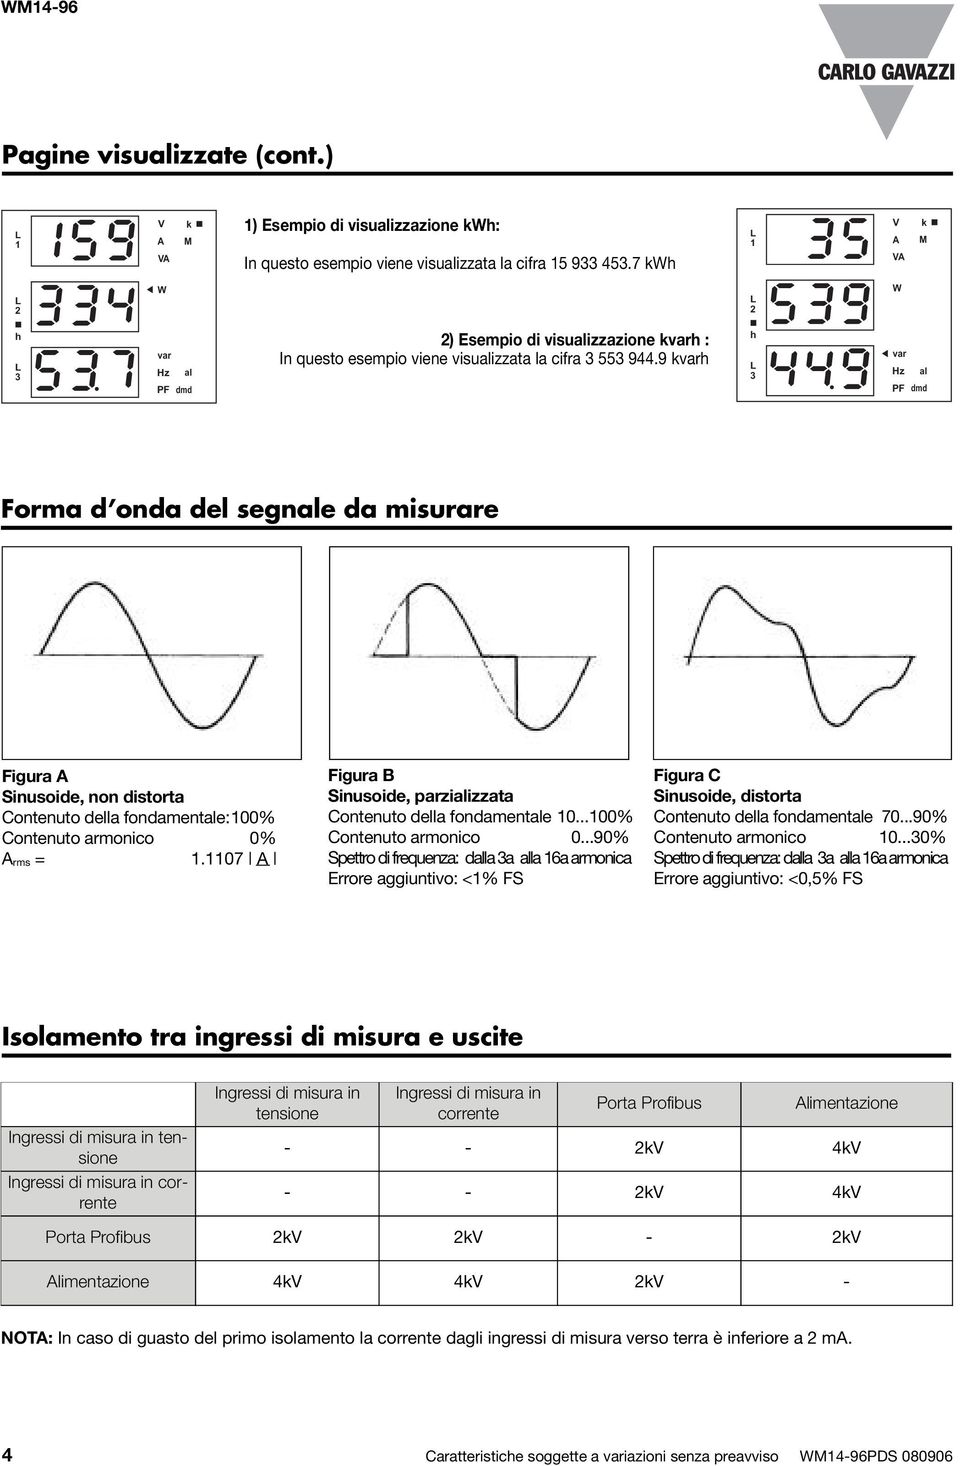 9 kvarh h 3 var Hz al PF dmd Forma d onda del segnale da misurare Figura A Sinusoide, non distorta Contenuto della fondamentale:100% Contenuto armonico 0% A rms = 1.